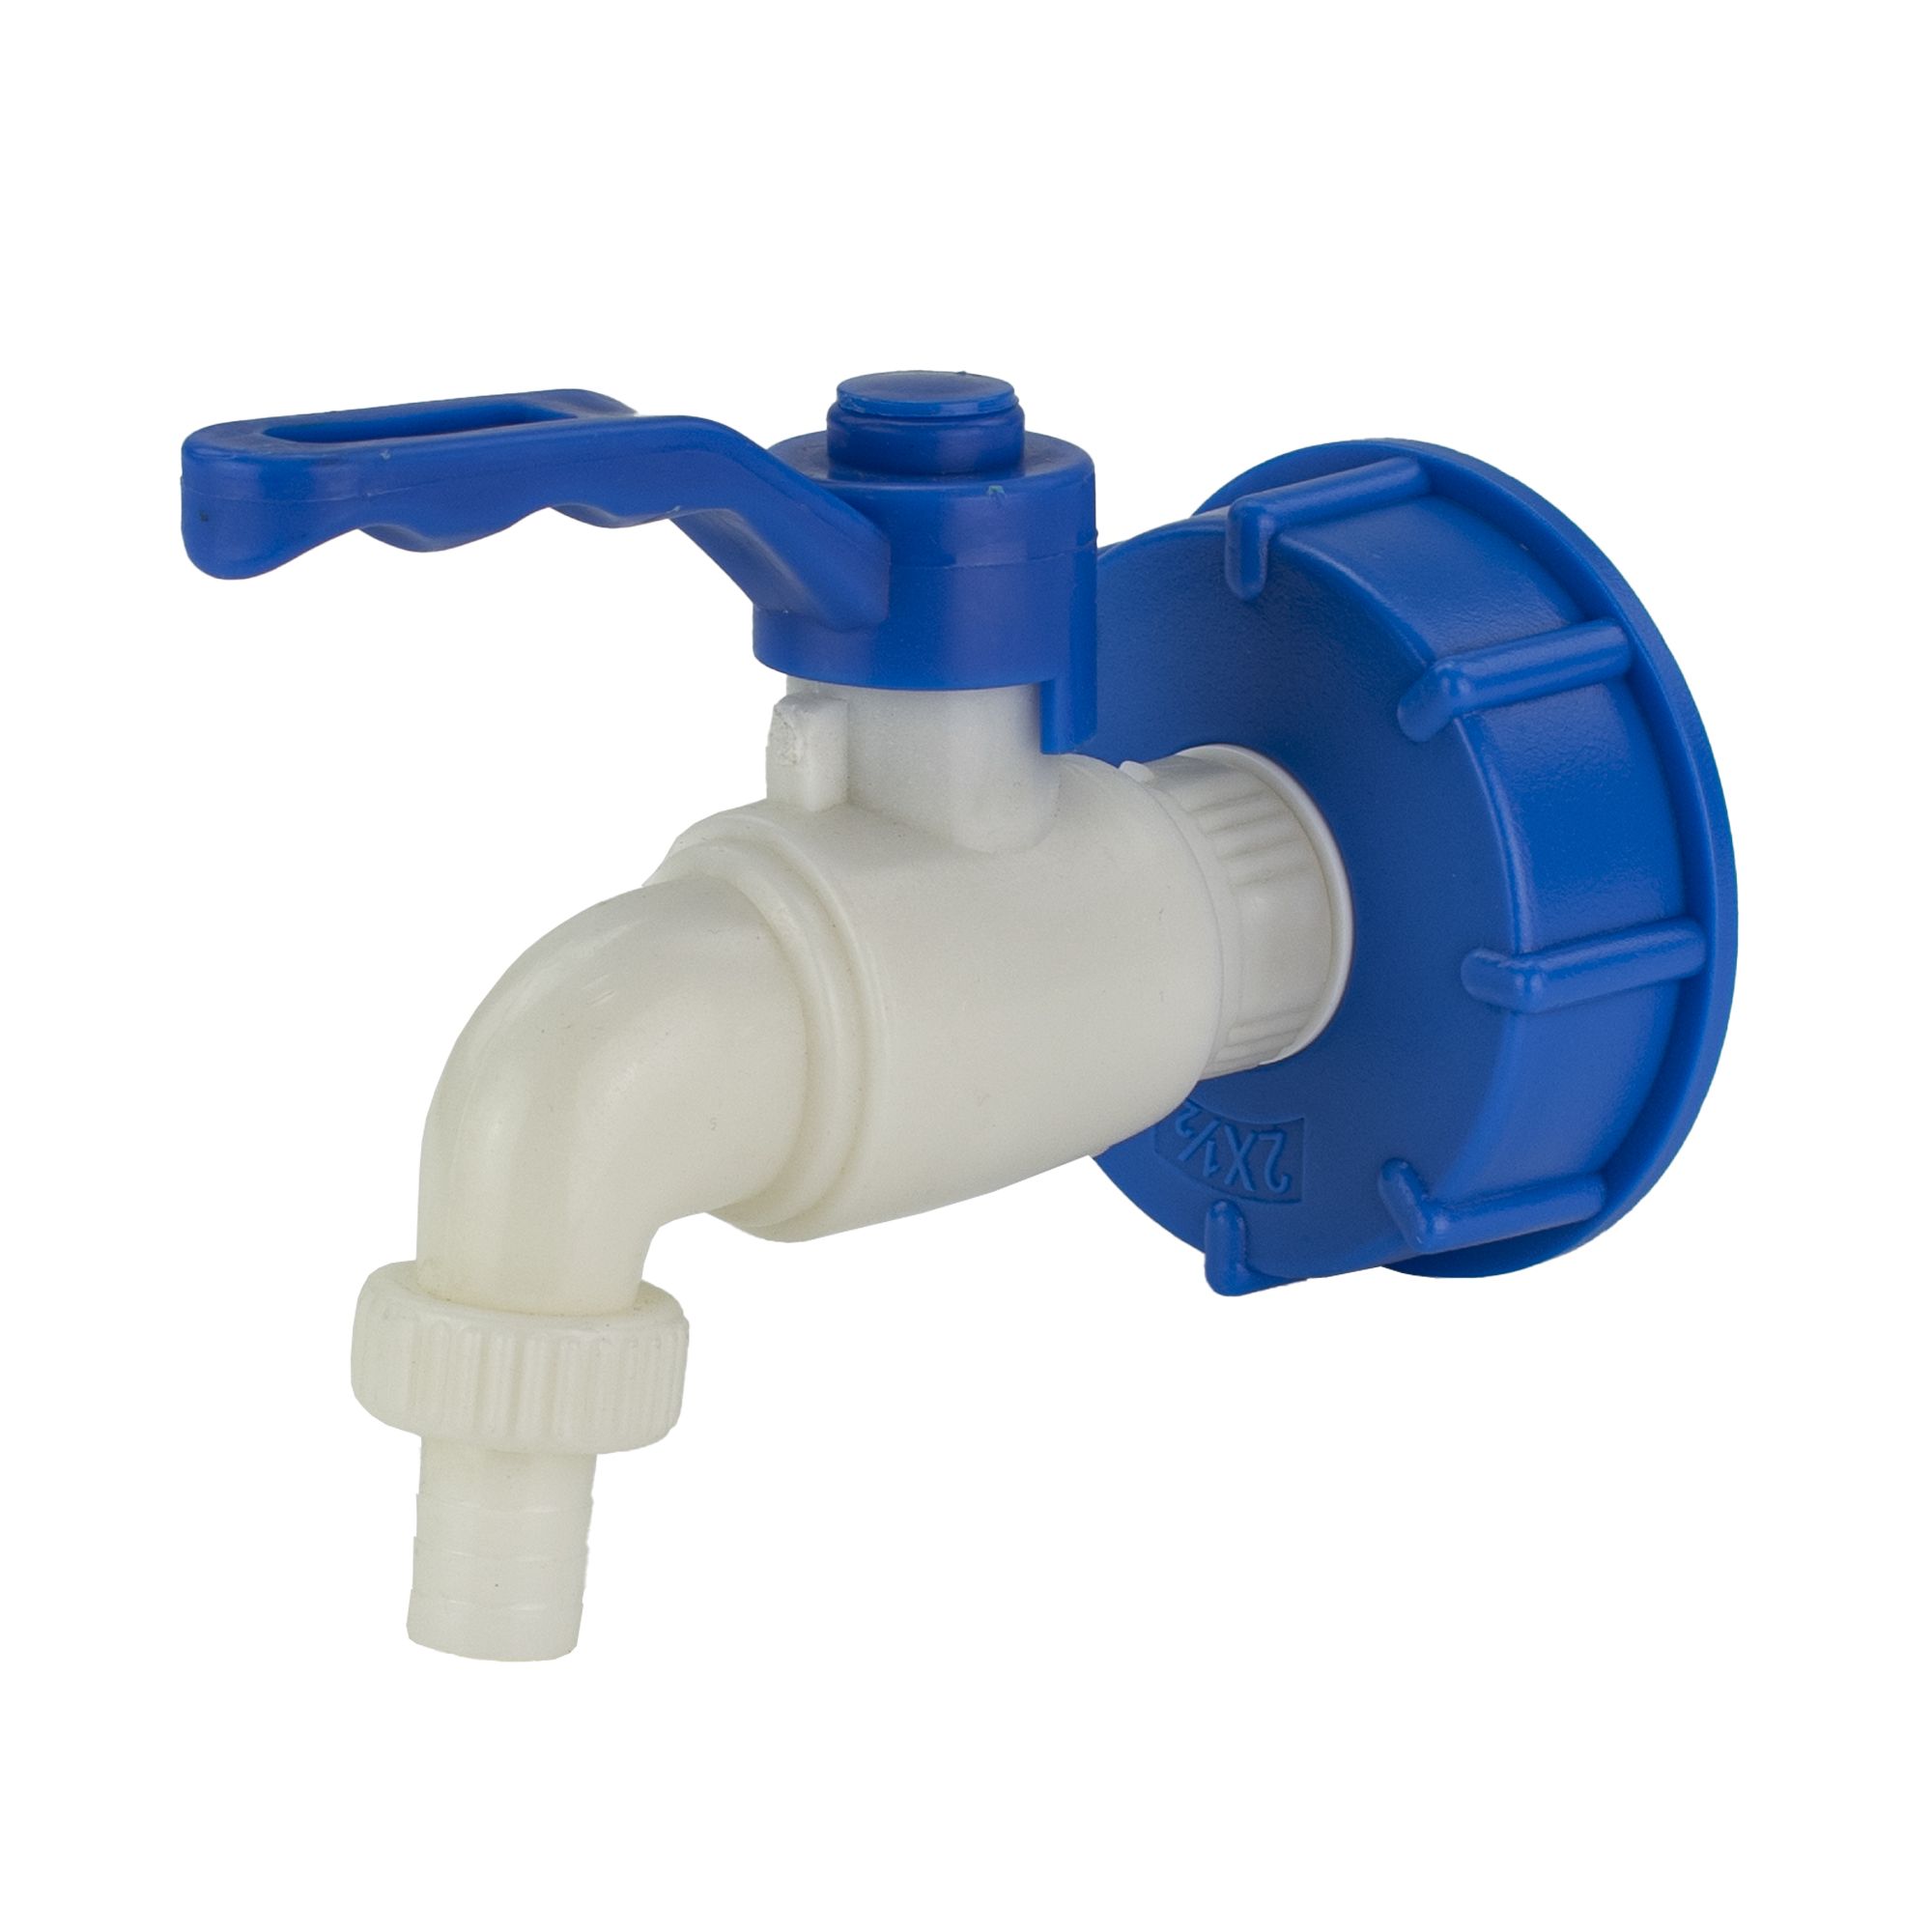 Redukce na IBC nádrž + ventil, plast, 60mm - 1/2", BRADAS